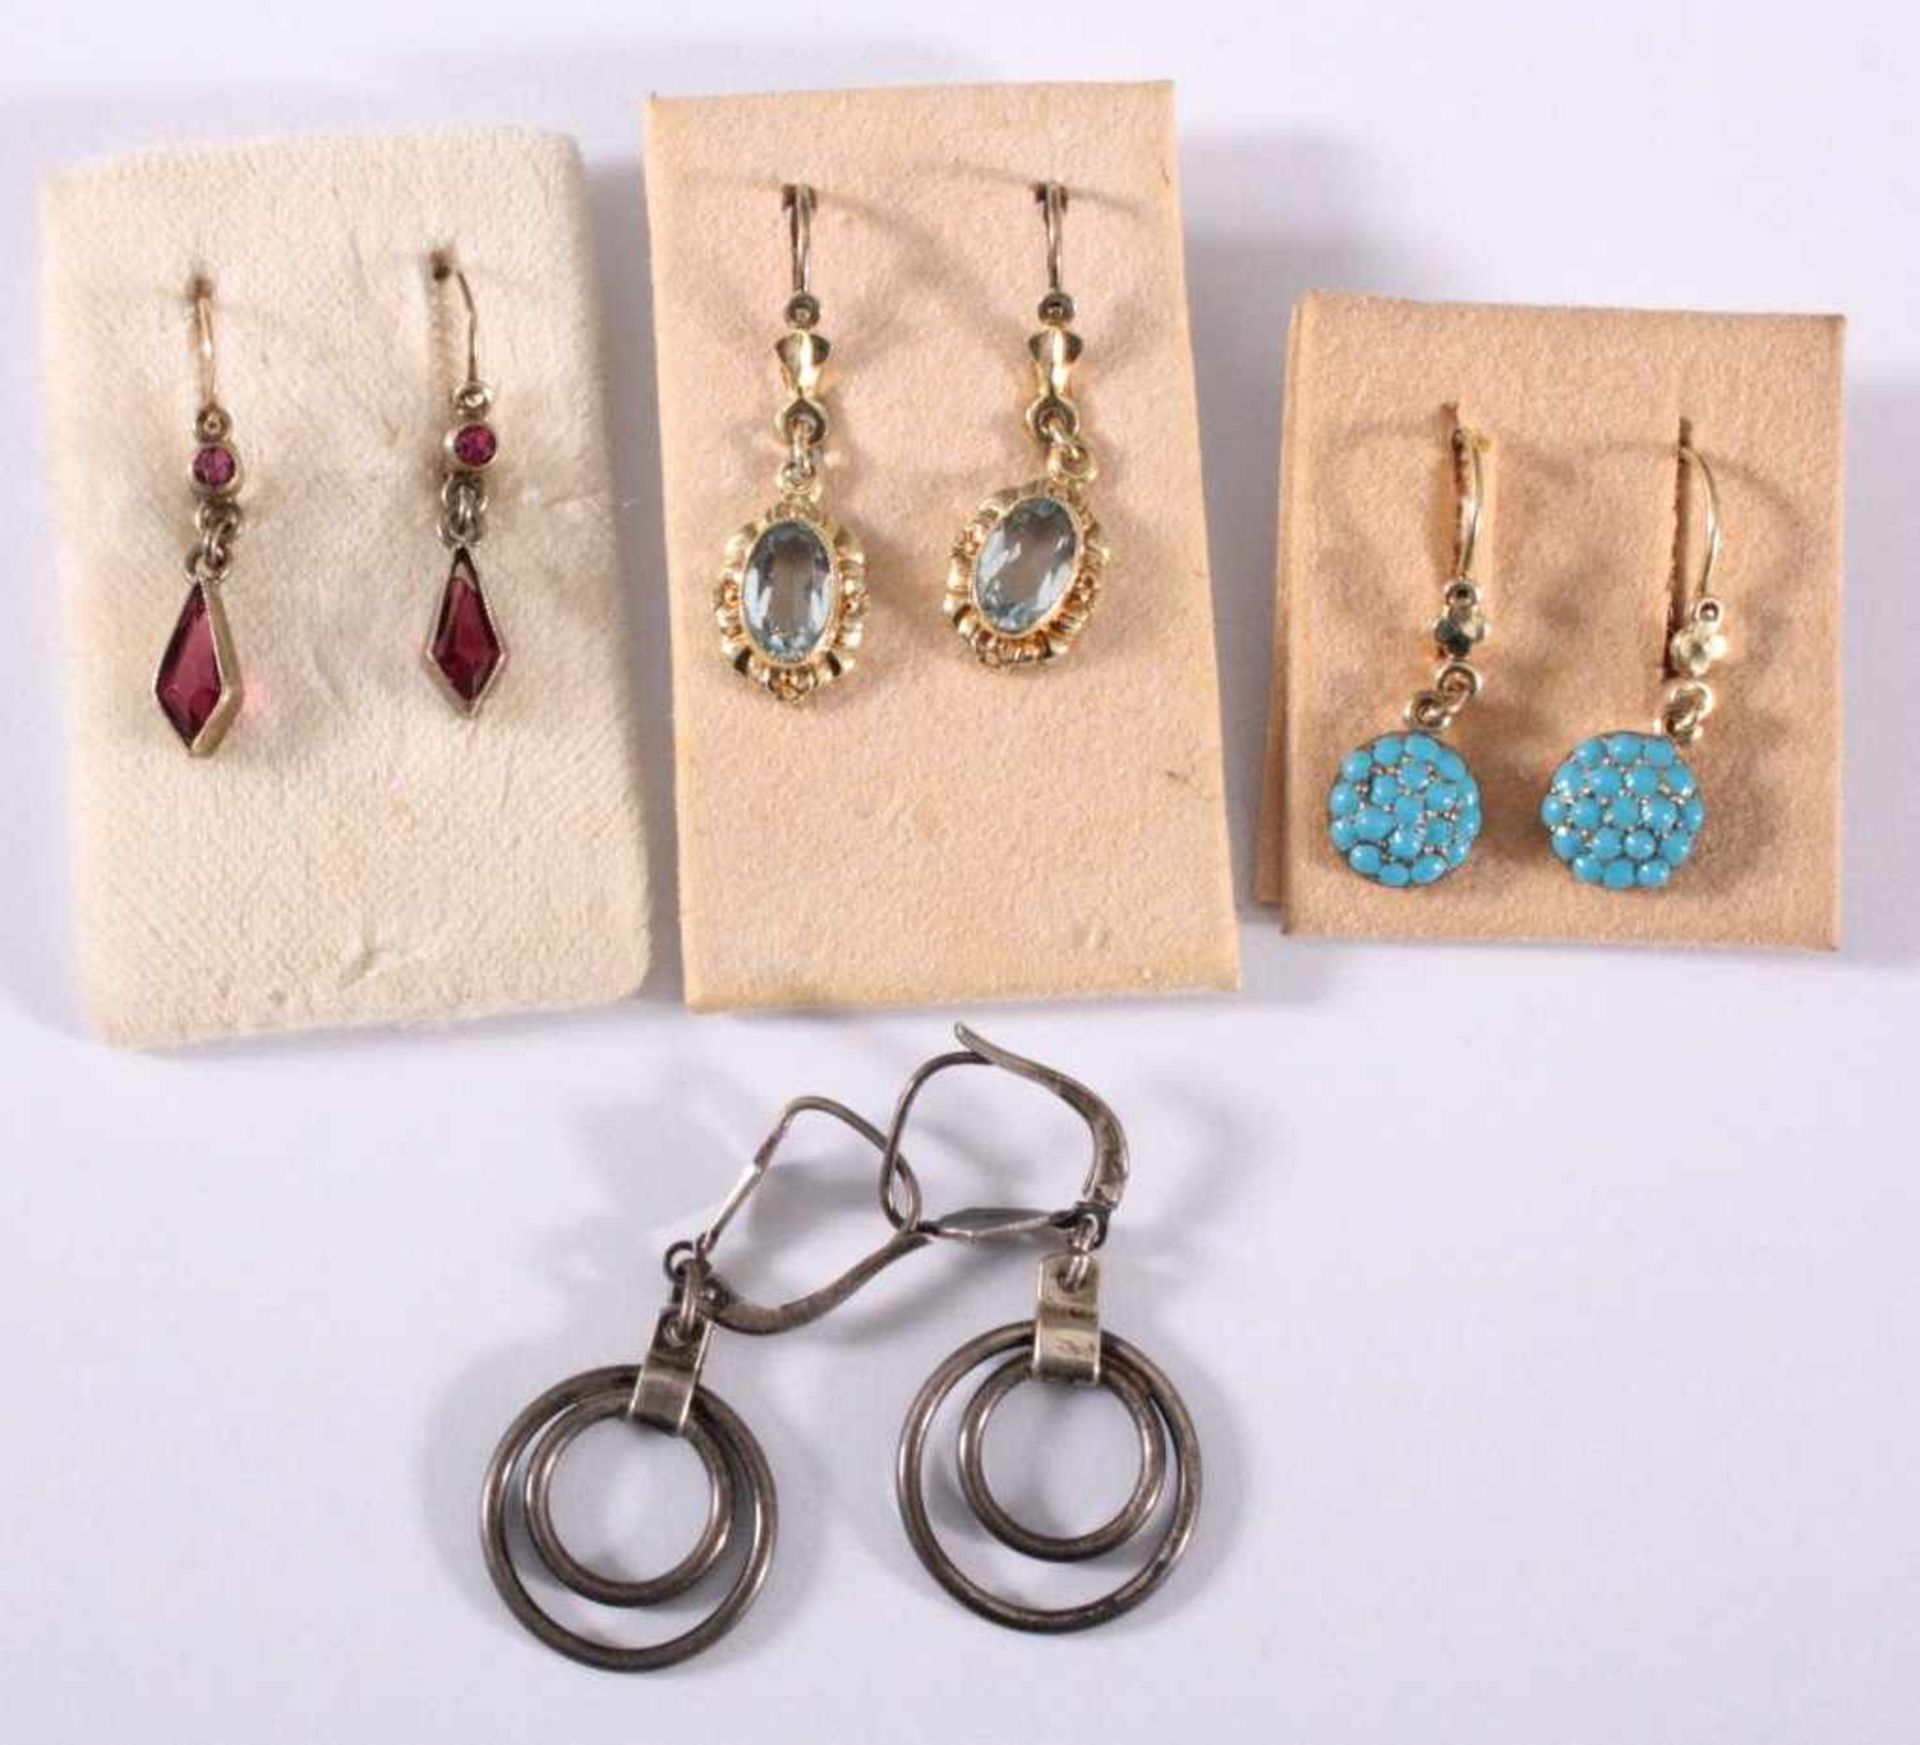 Antike Ohrringe um 1900, Silberbügel, vergoldet4 Paar, Granat, Aquamarin und Türkis